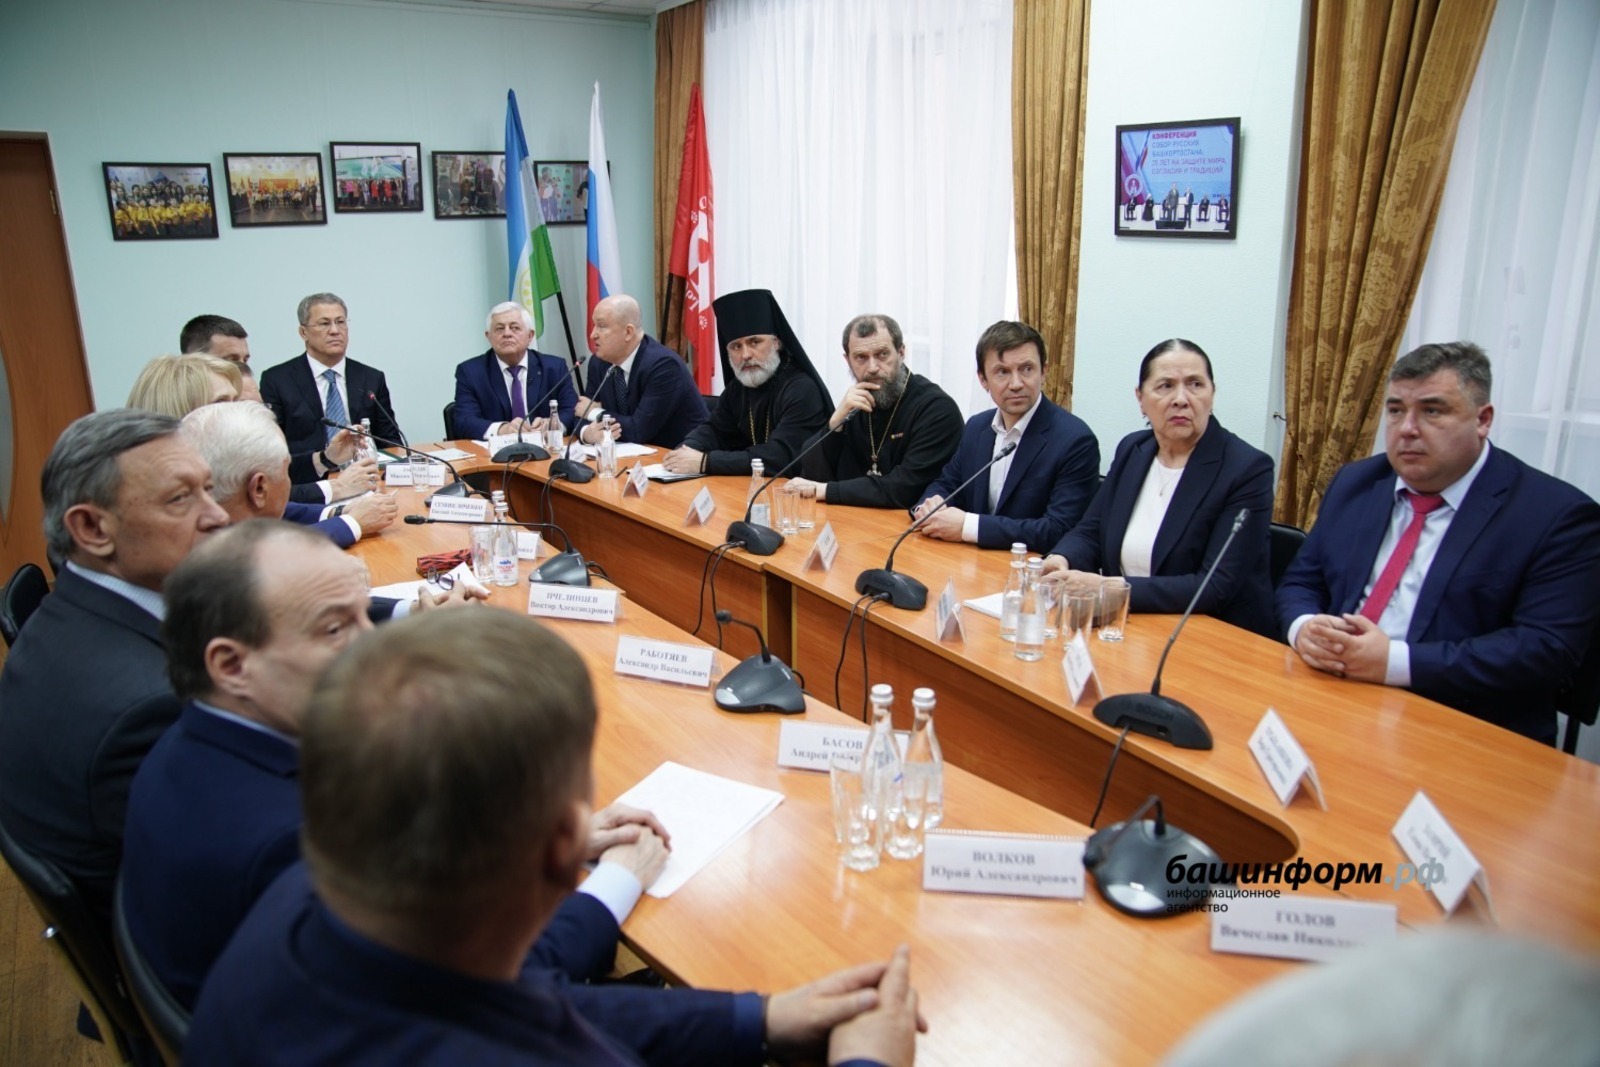 Глава Башкирии Радий Хабиров рассказал о межнациональном согласии в республике